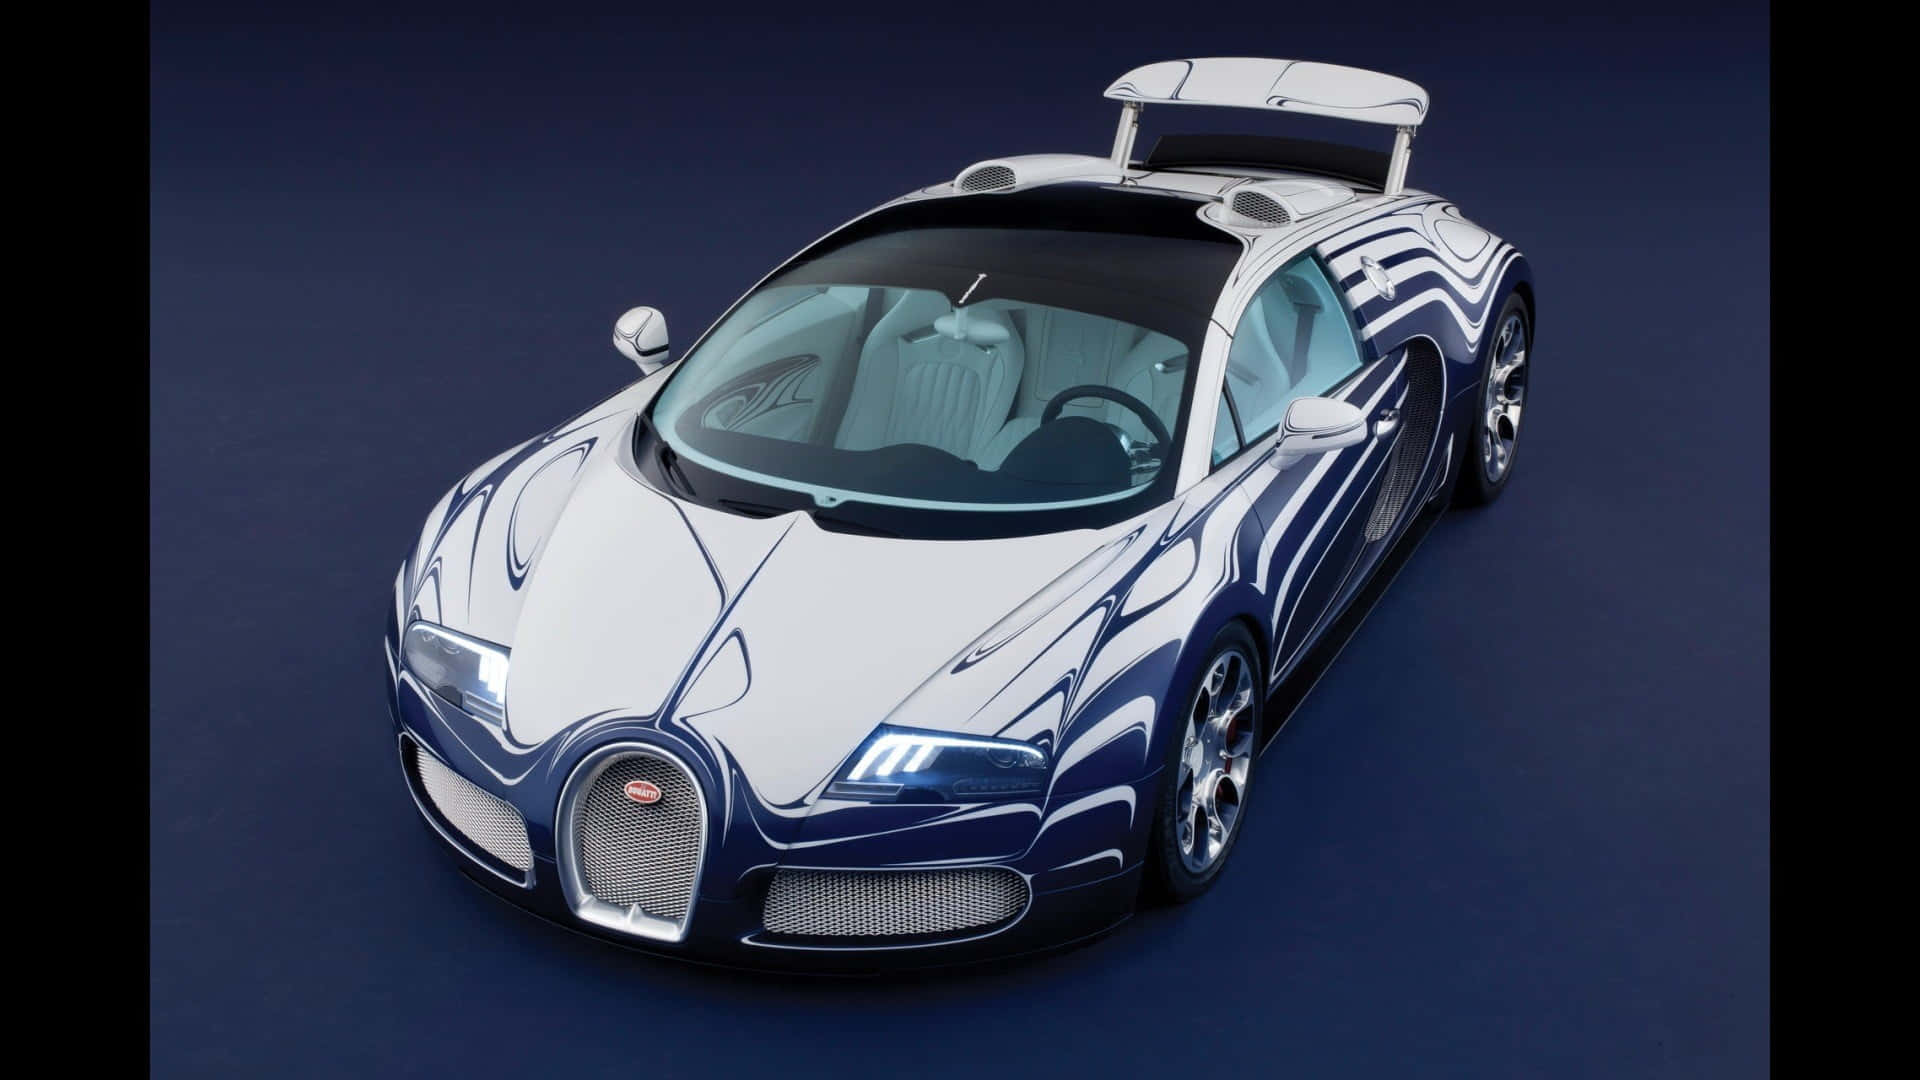 Hellelichter, Schnelle Autos: Der Neon Bugatti. Wallpaper